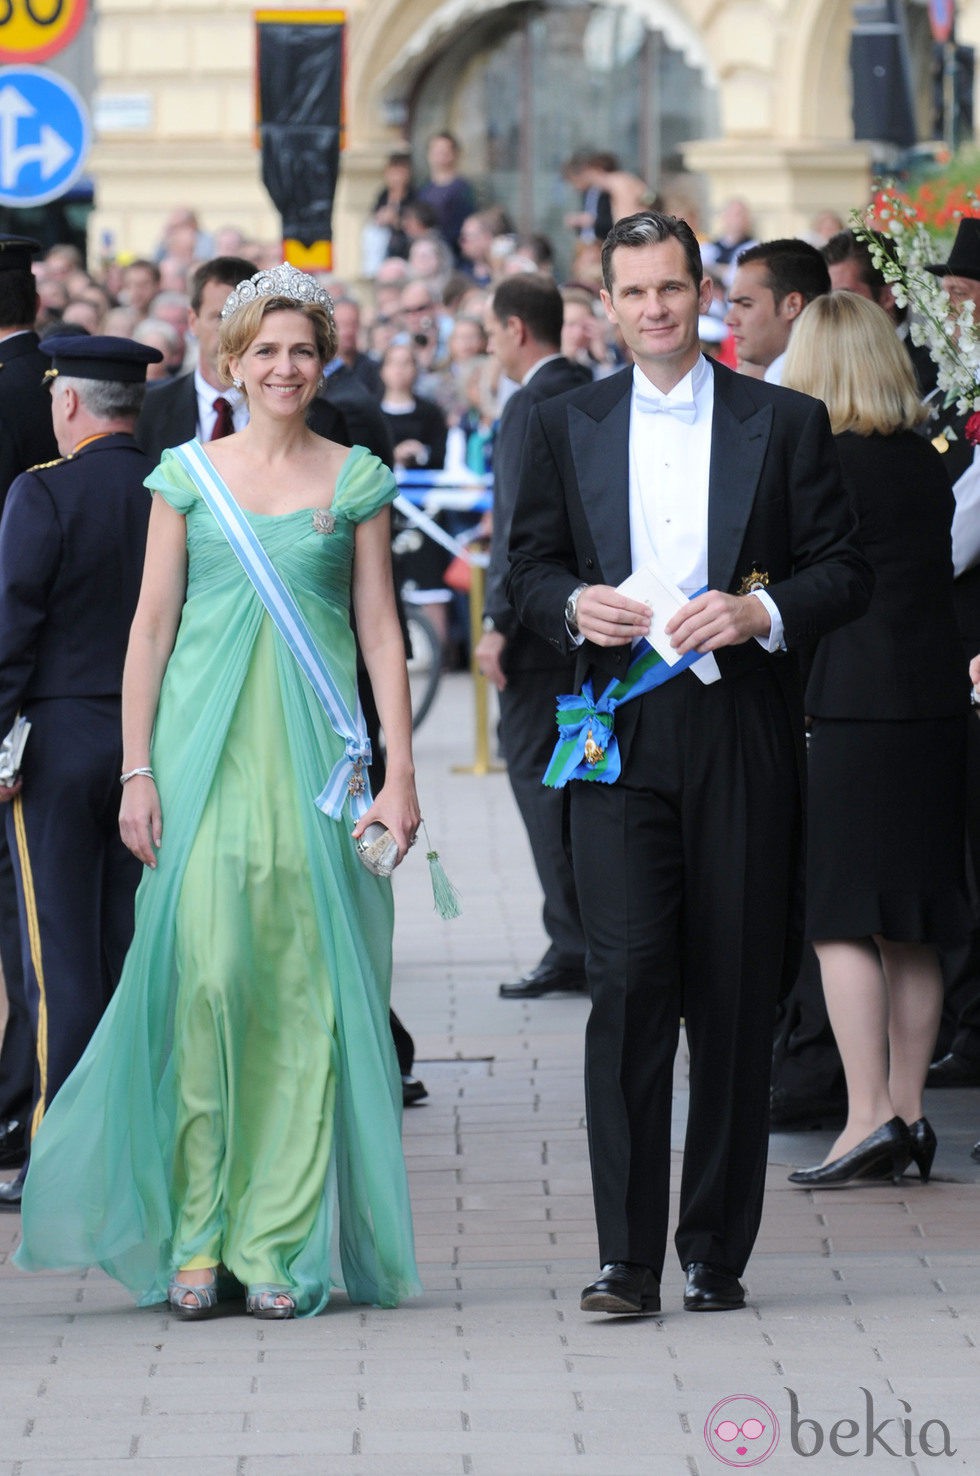 Los Duques de Palma en la boda de Victoria y Daniel de Suecia